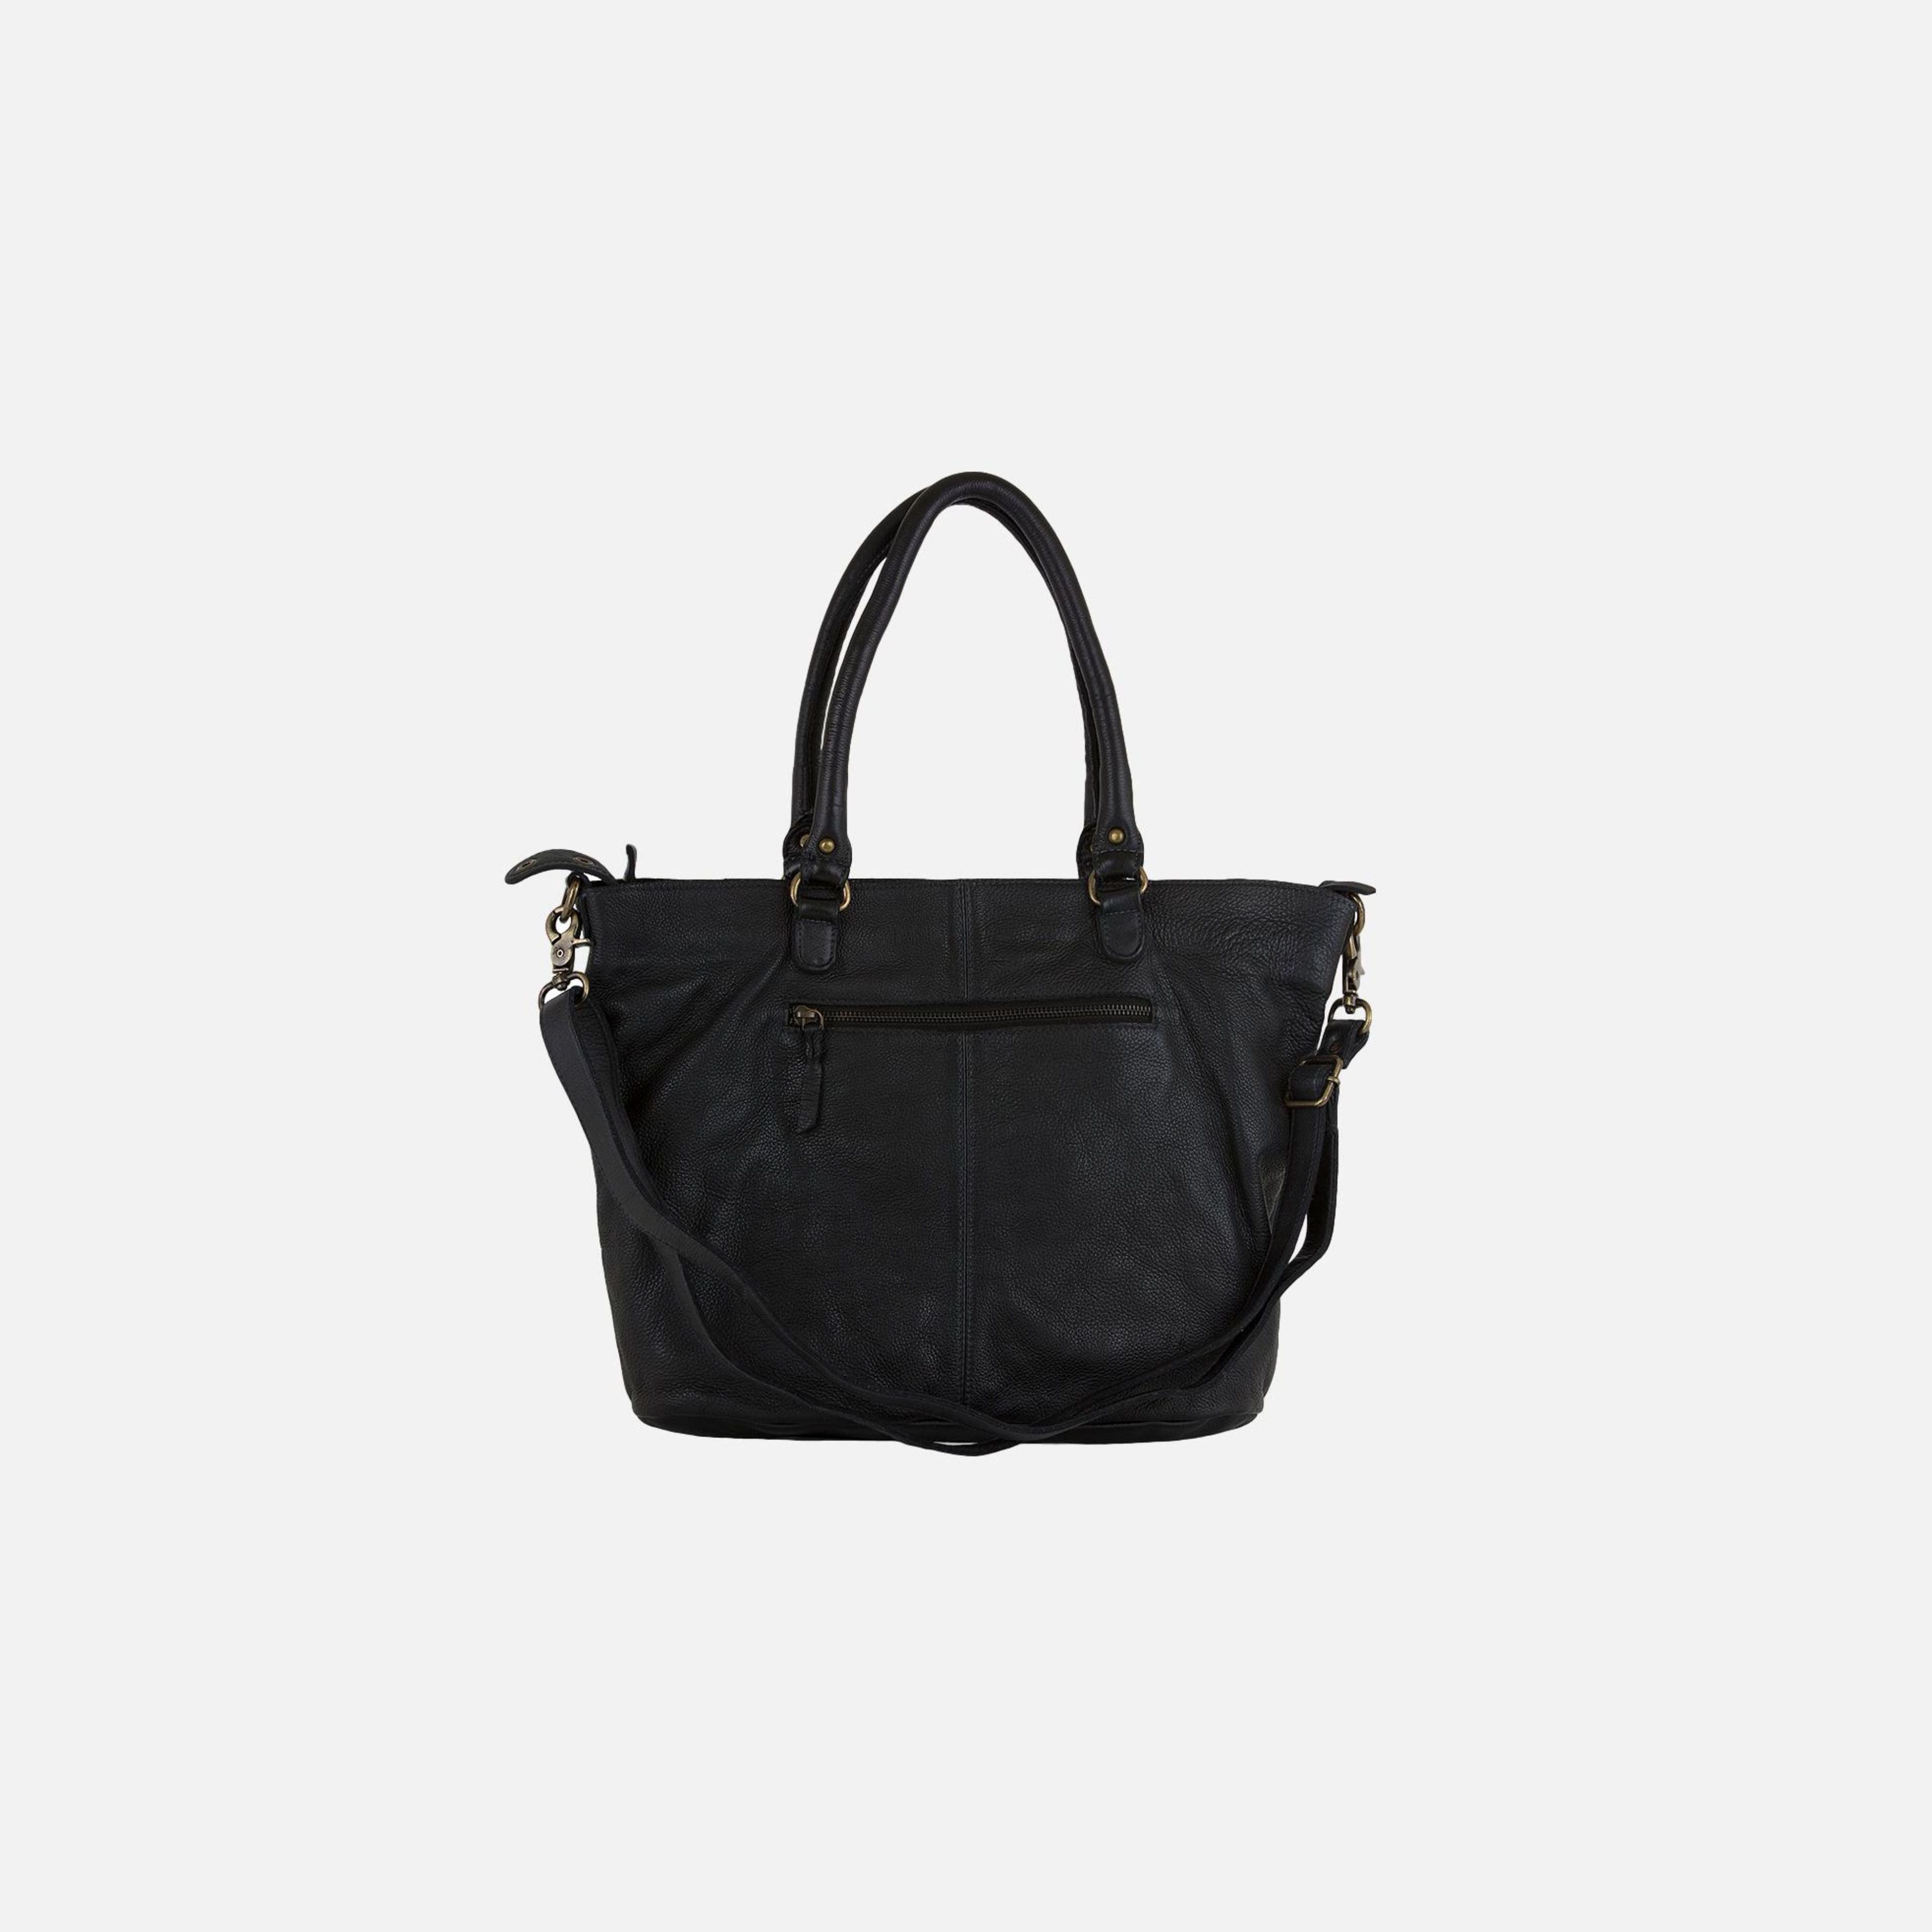 Kalter | Convertible Tote Bag